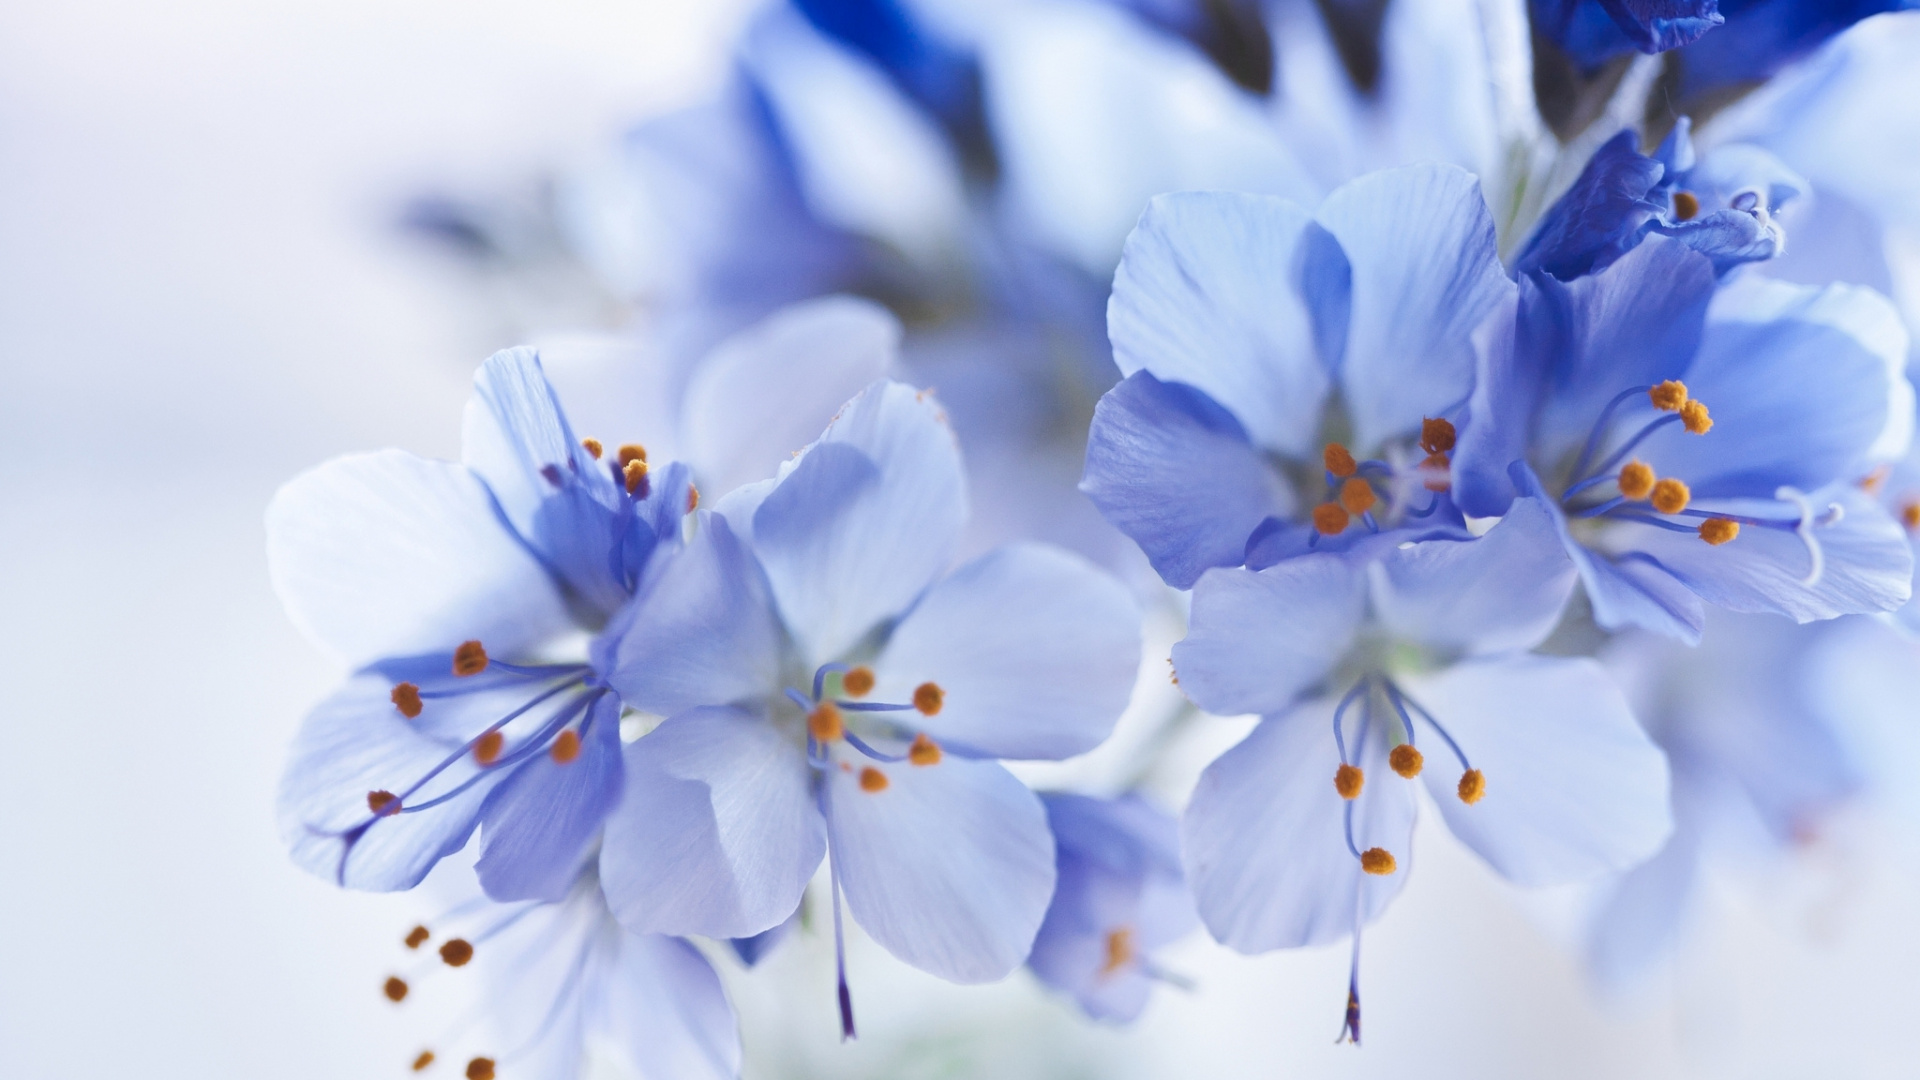 Flores Blancas y Azules en Lentes de Cambio de Inclinación. Wallpaper in 1920x1080 Resolution